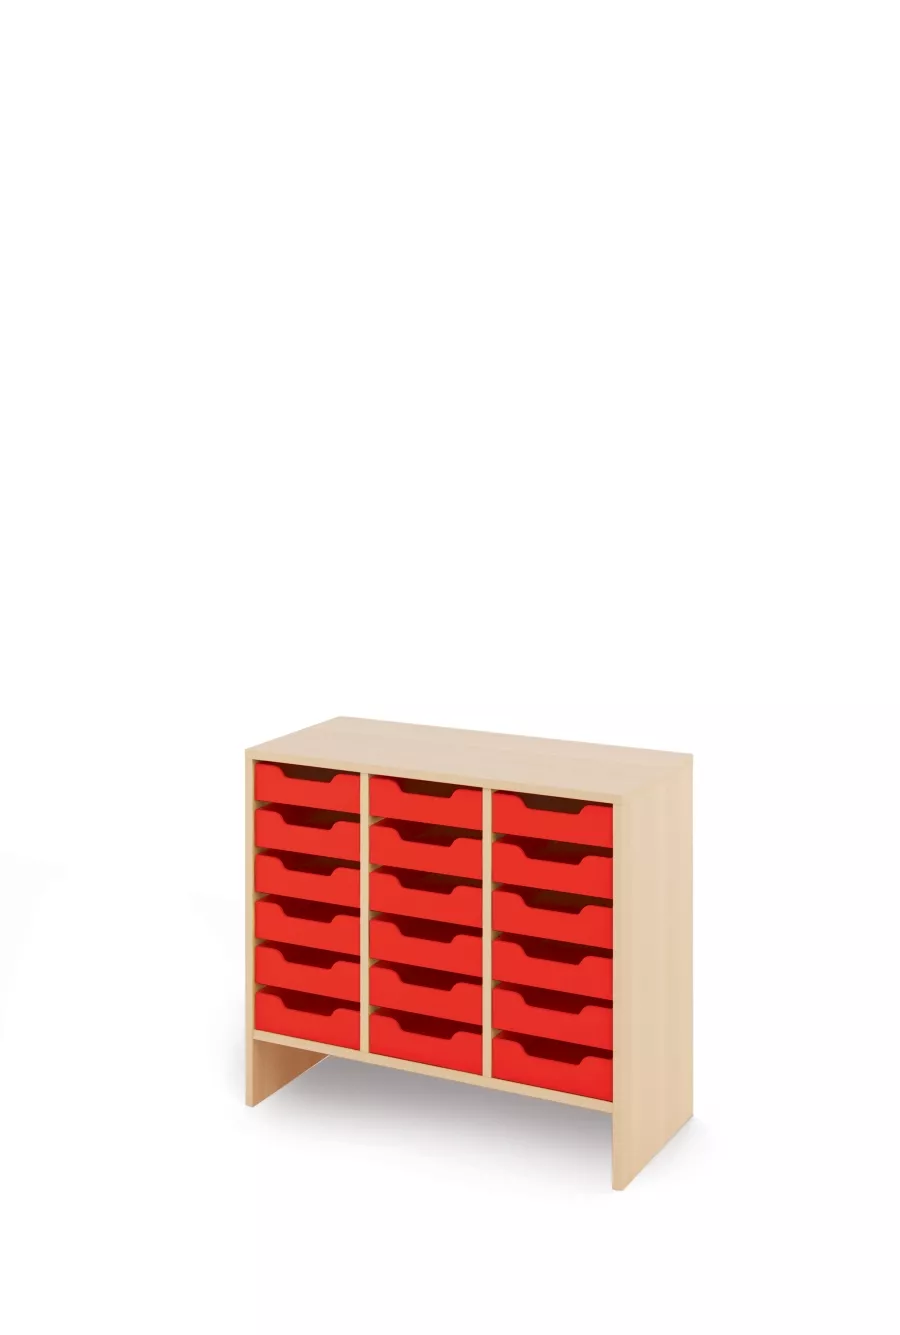 Dulap (M) cu sertare mici din carton - Rosu